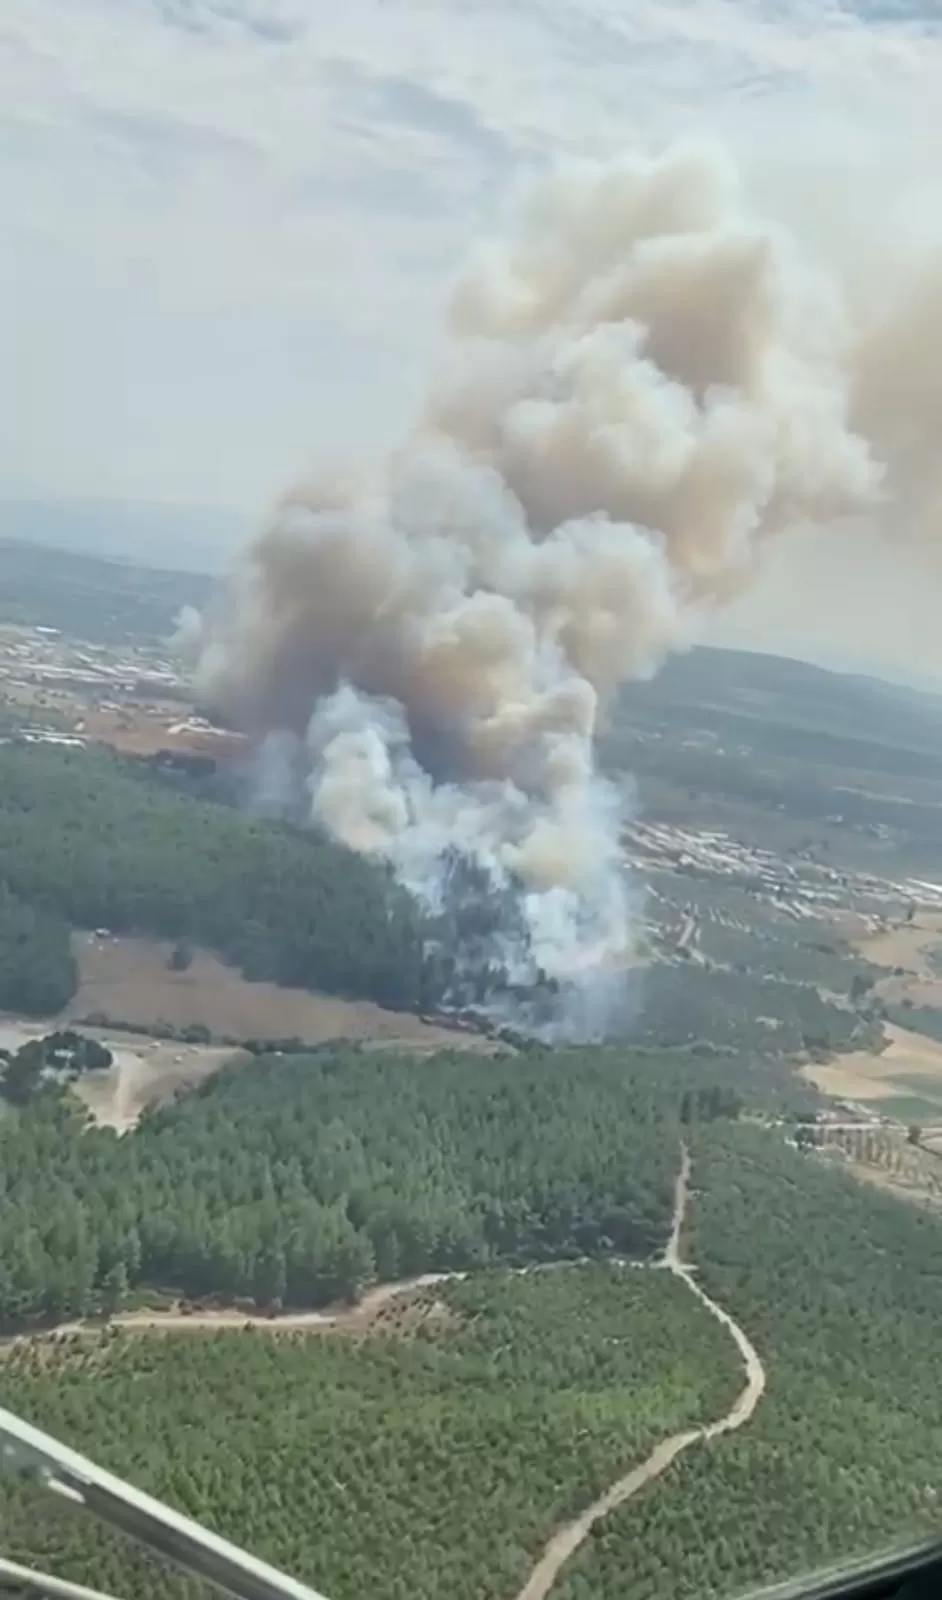 İzmir’in Gaziemir ilçesinde ormanlık alanda çıkan yangına havadan ve karadan müdahale ediliyor.